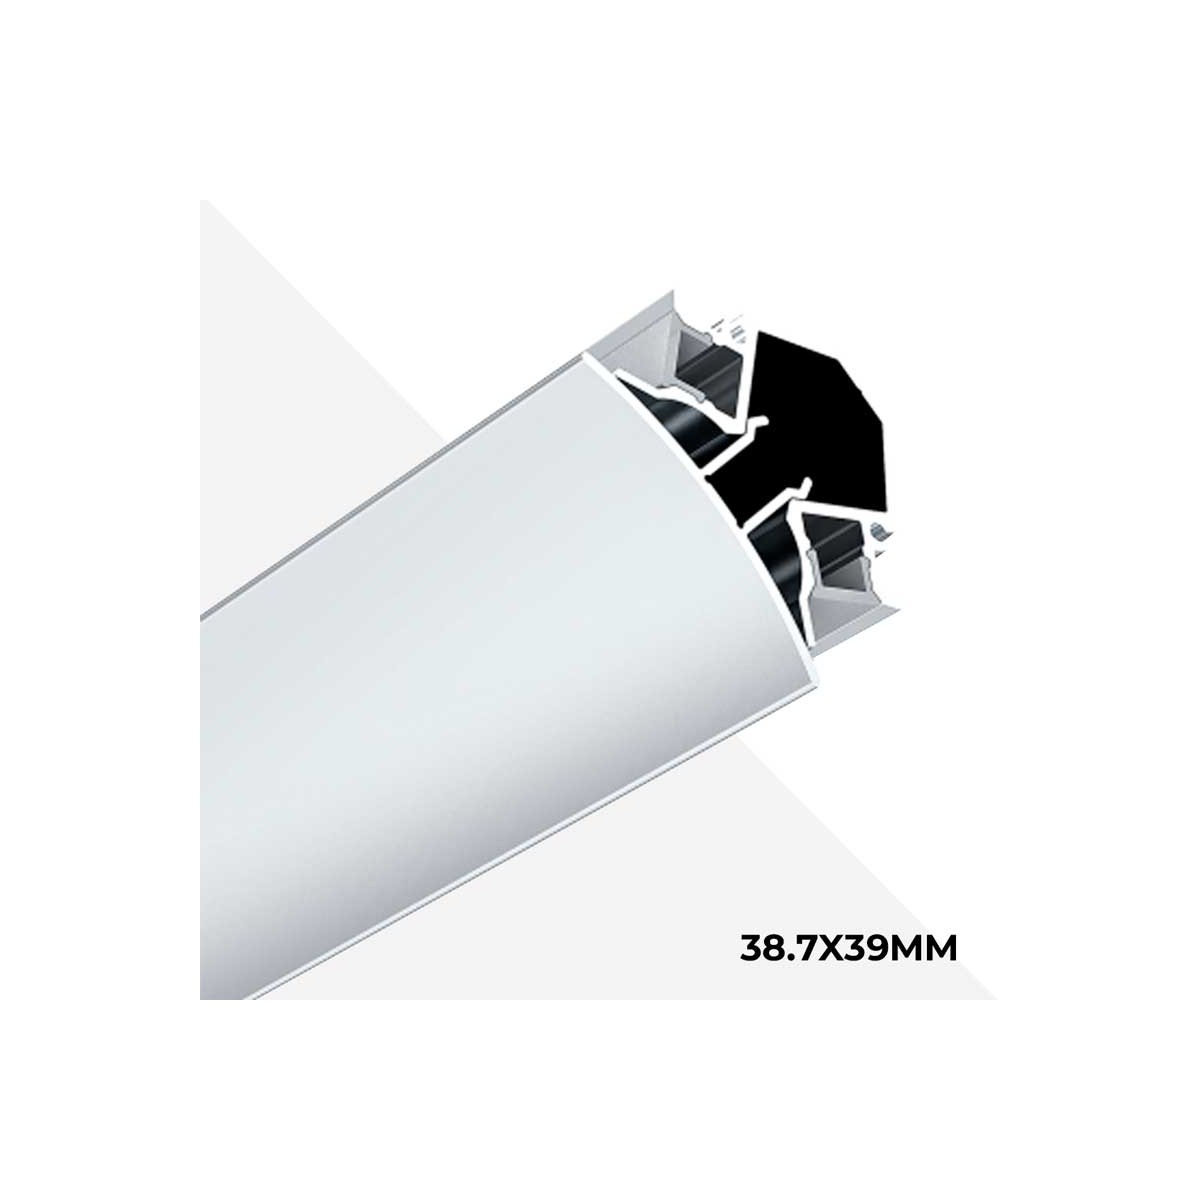 Perfil de aluminio de 38.7x39mm para esquinas con tiras LED brinda una iluminación doble en paredes y techos